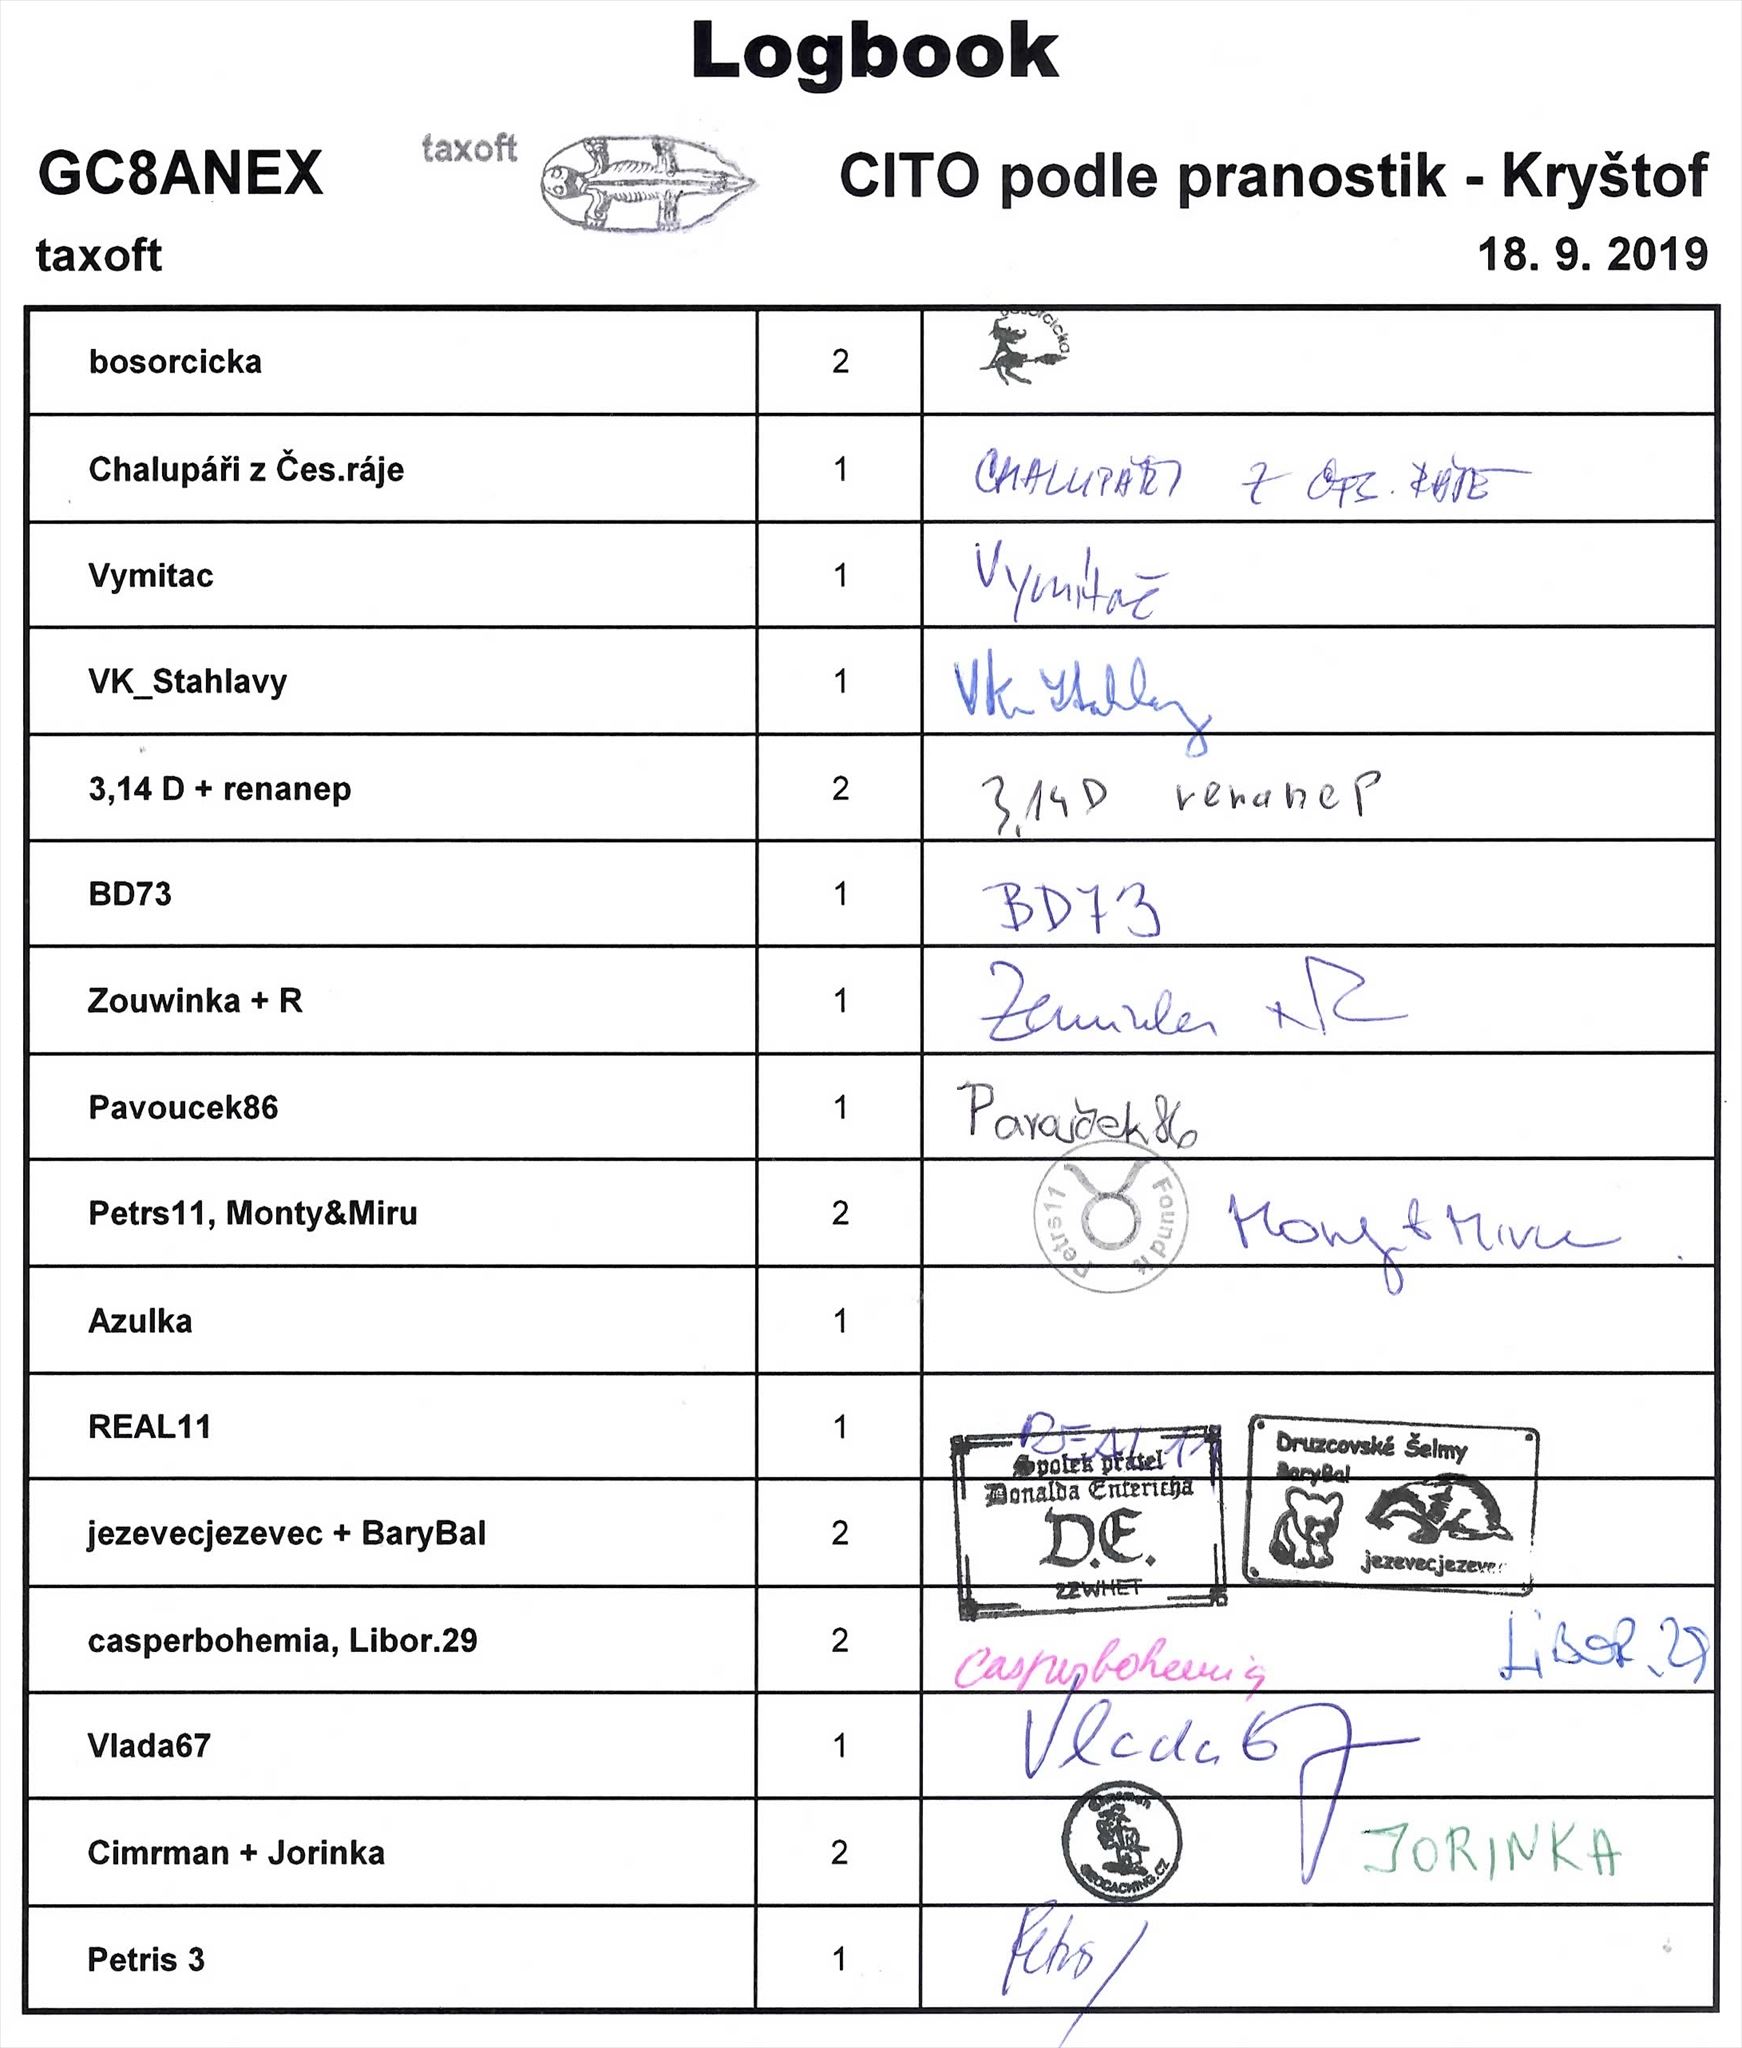 GC8ANEX - CITO podle pranostik - Kryštof - logbook